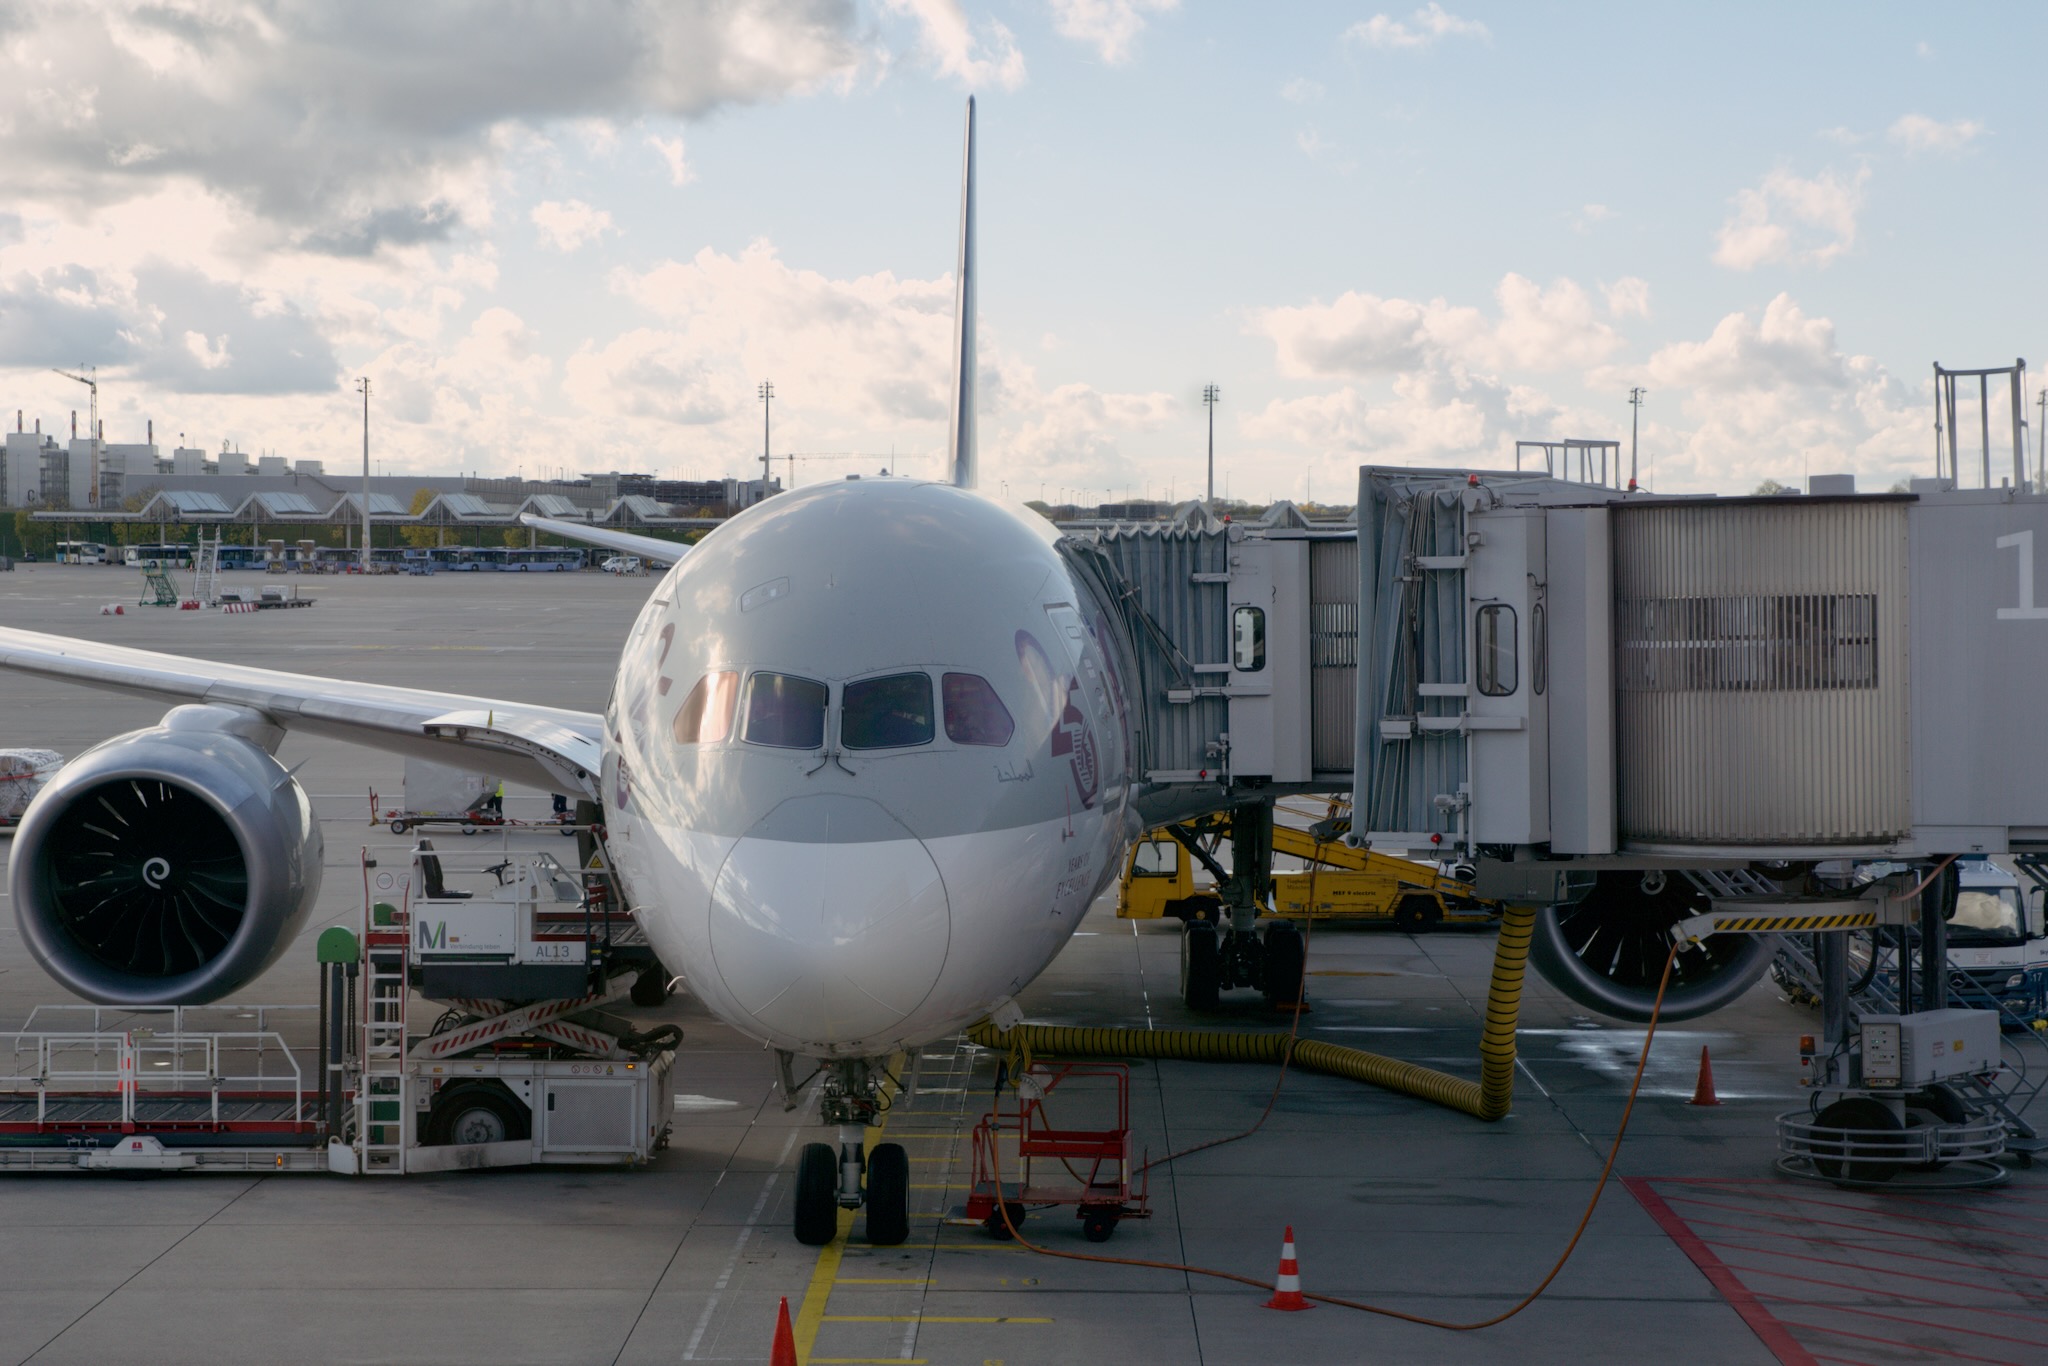 Qatar Airways Boeing 787-8 am Gate am Flughafen München